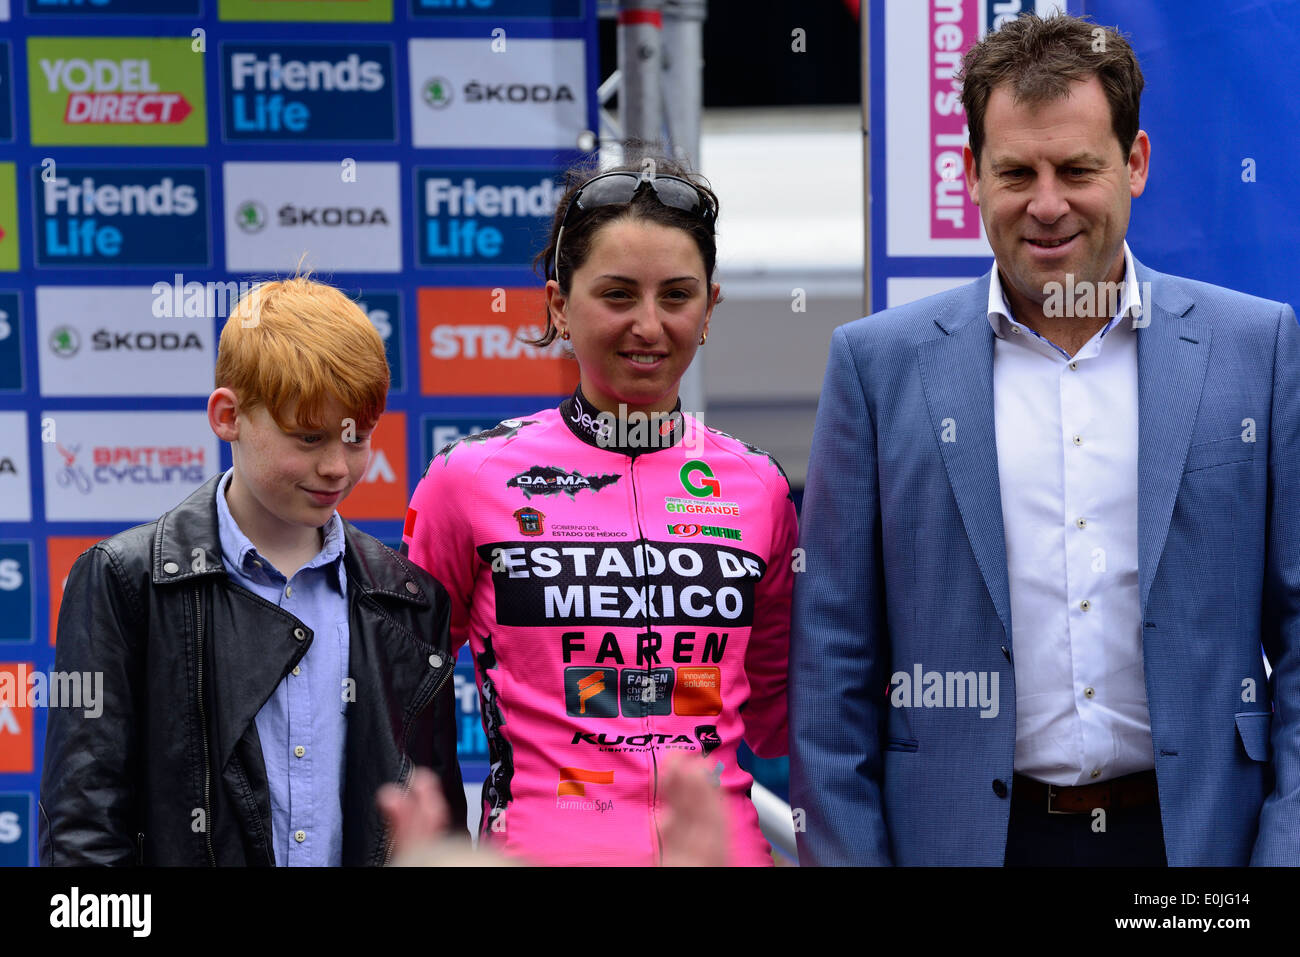 Rosella Rato, Estado de Mexico Faren, Dritter der Gesamtwertung der Freunde Leben Womens Tour, Radrennen, Bury St Edmunds, UK, 11. Mai 2014 Stockfoto